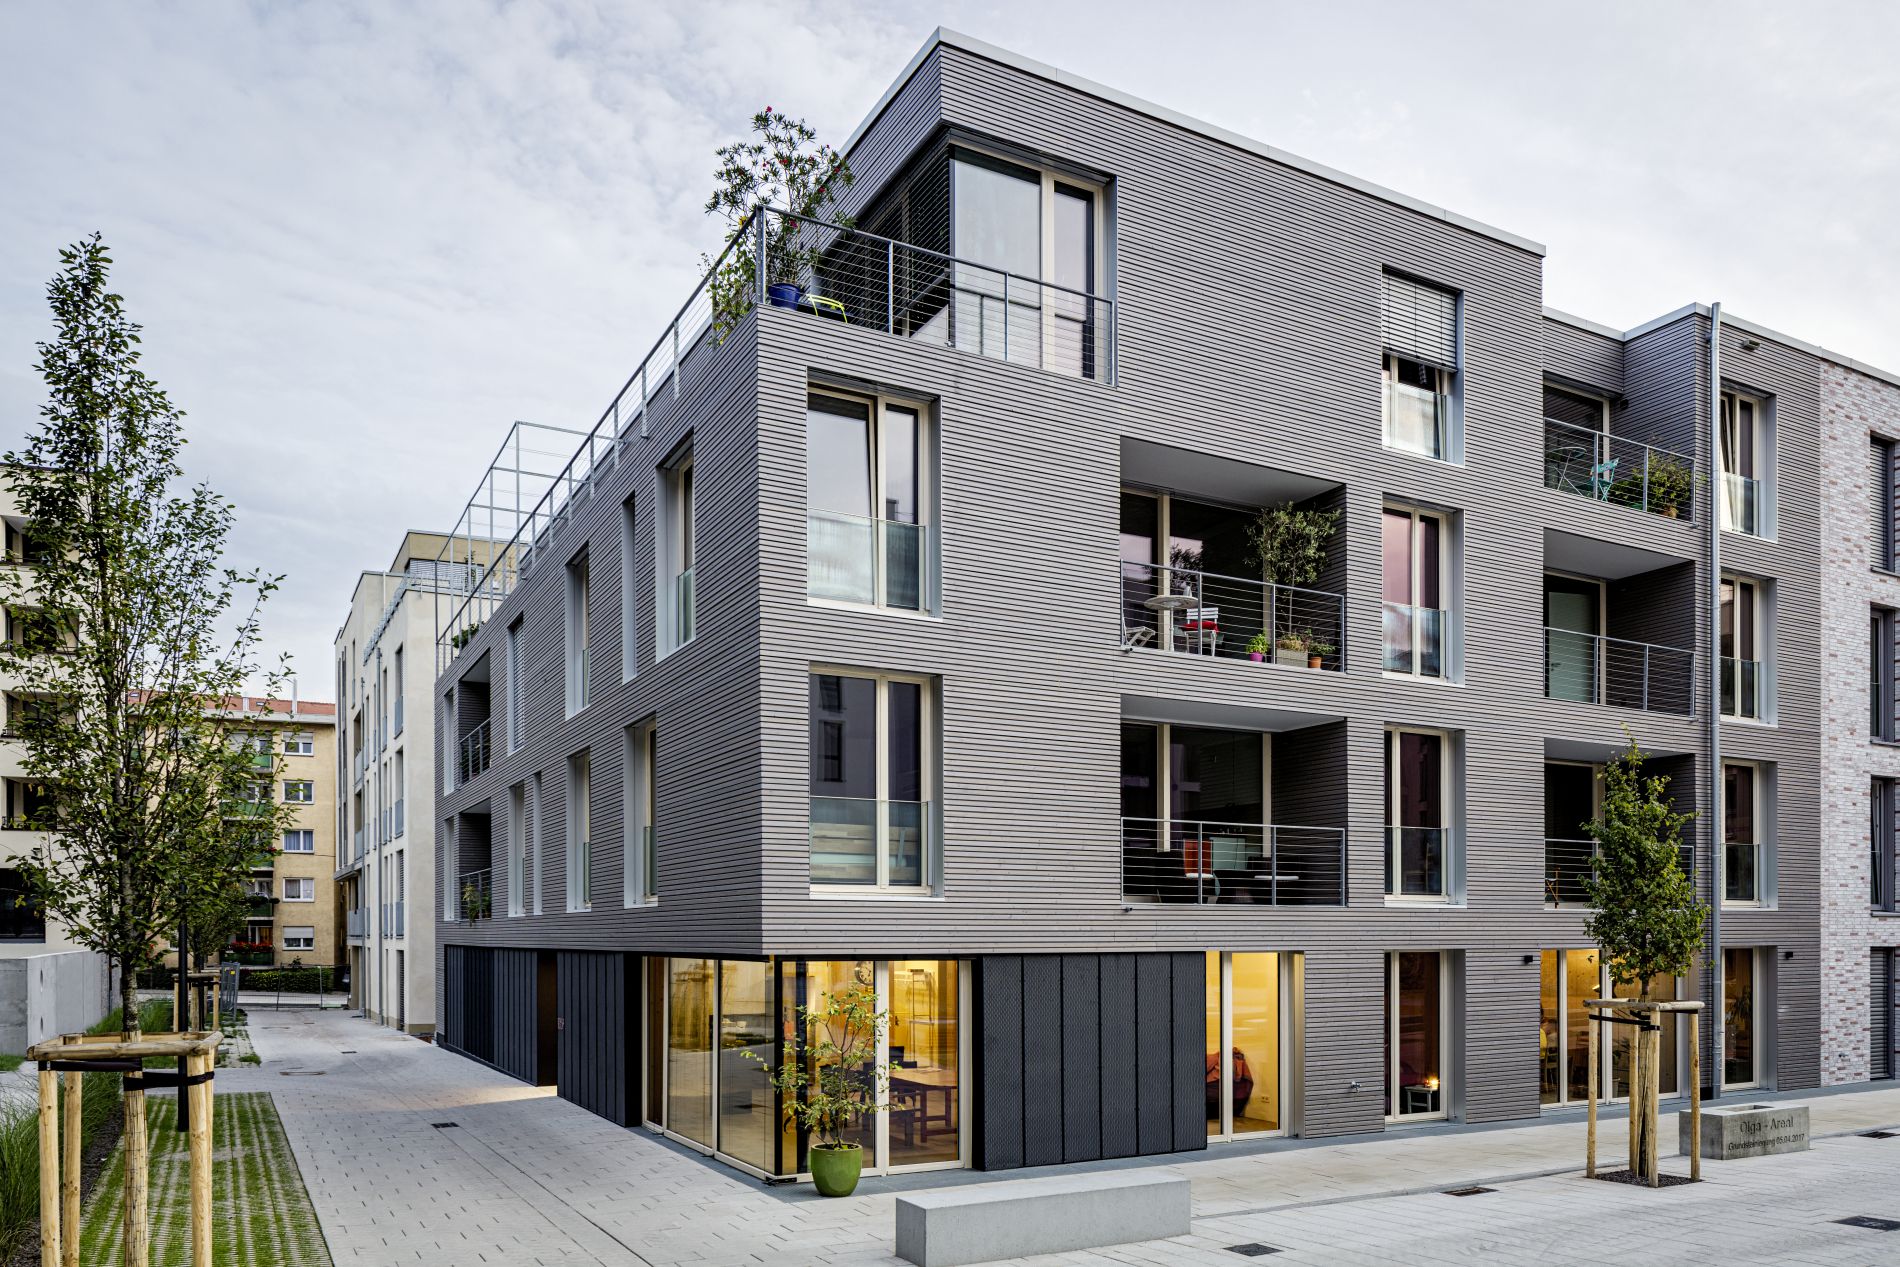 Im Bildvordergrund ist das viergeschossige Wohnhaus namens "MaxAcht" in Stuttgart zu sehen, dessen Fassade große Fenster und Loggien hat und mit querverlaufenden Holzbrettern verkleidet ist.